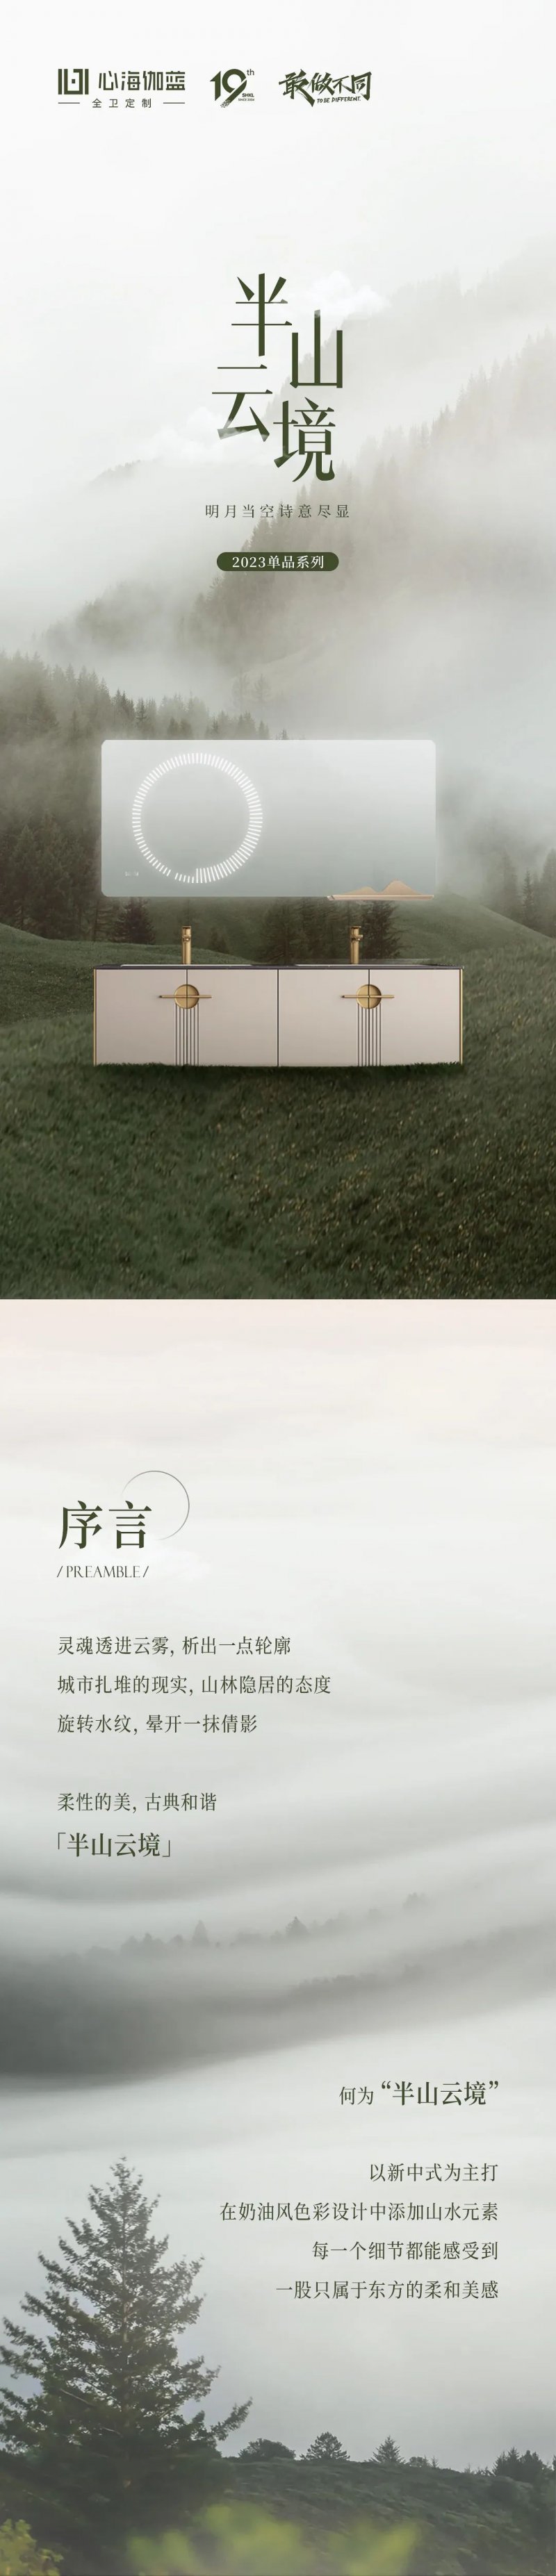 心海伽蓝全卫定制·半山云境系列浴室柜图片